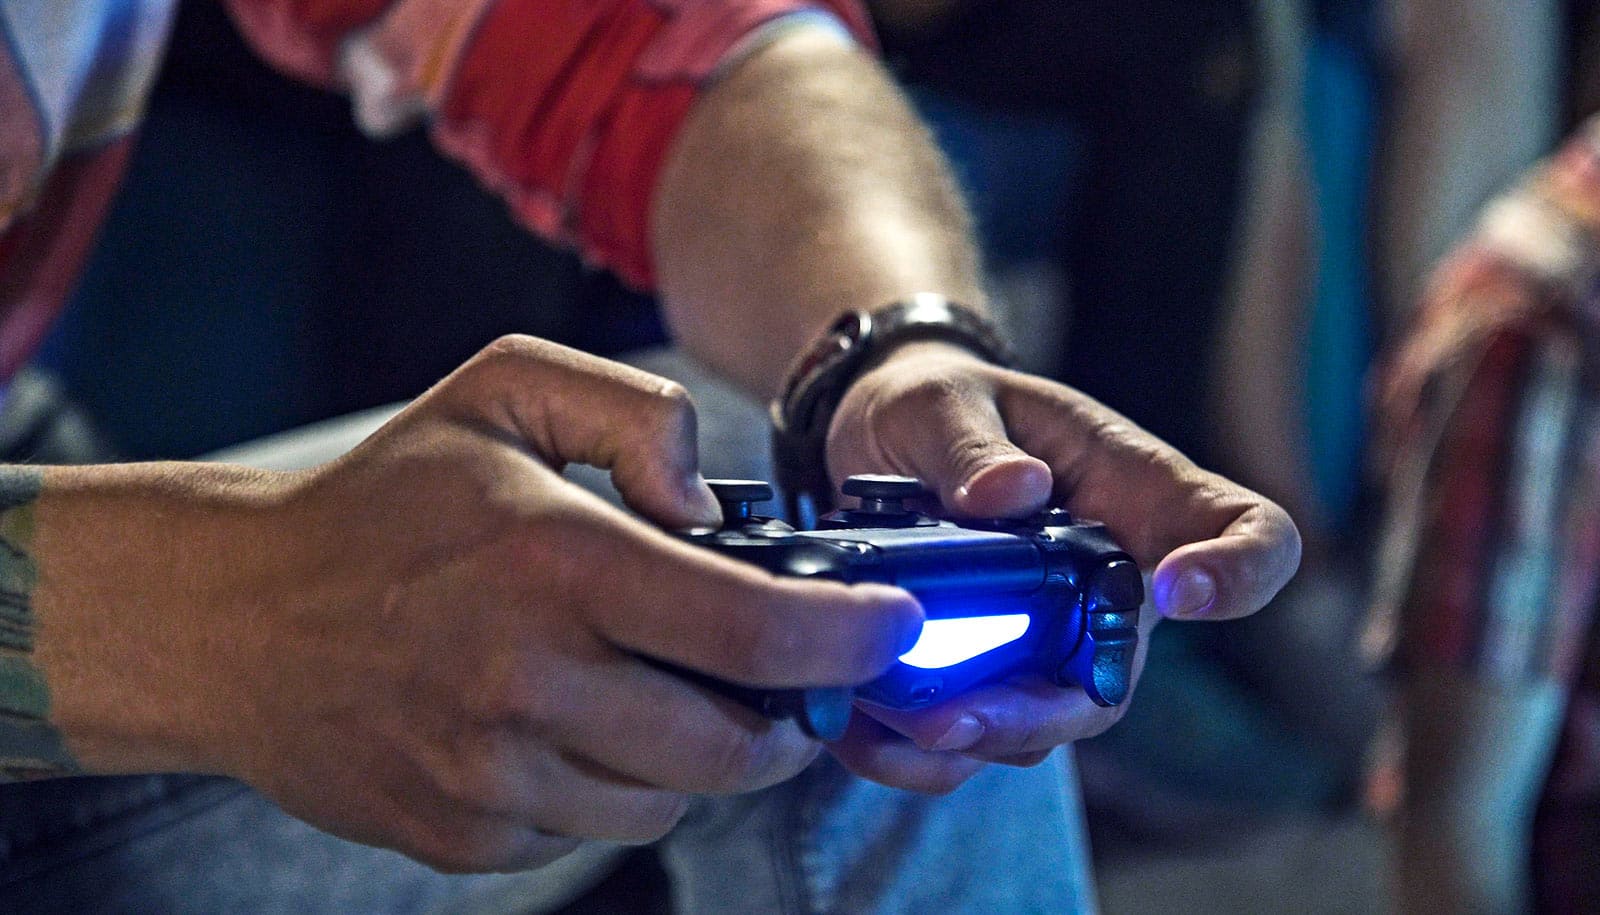 玩电子游戏来应对焦虑可能意味着成瘾